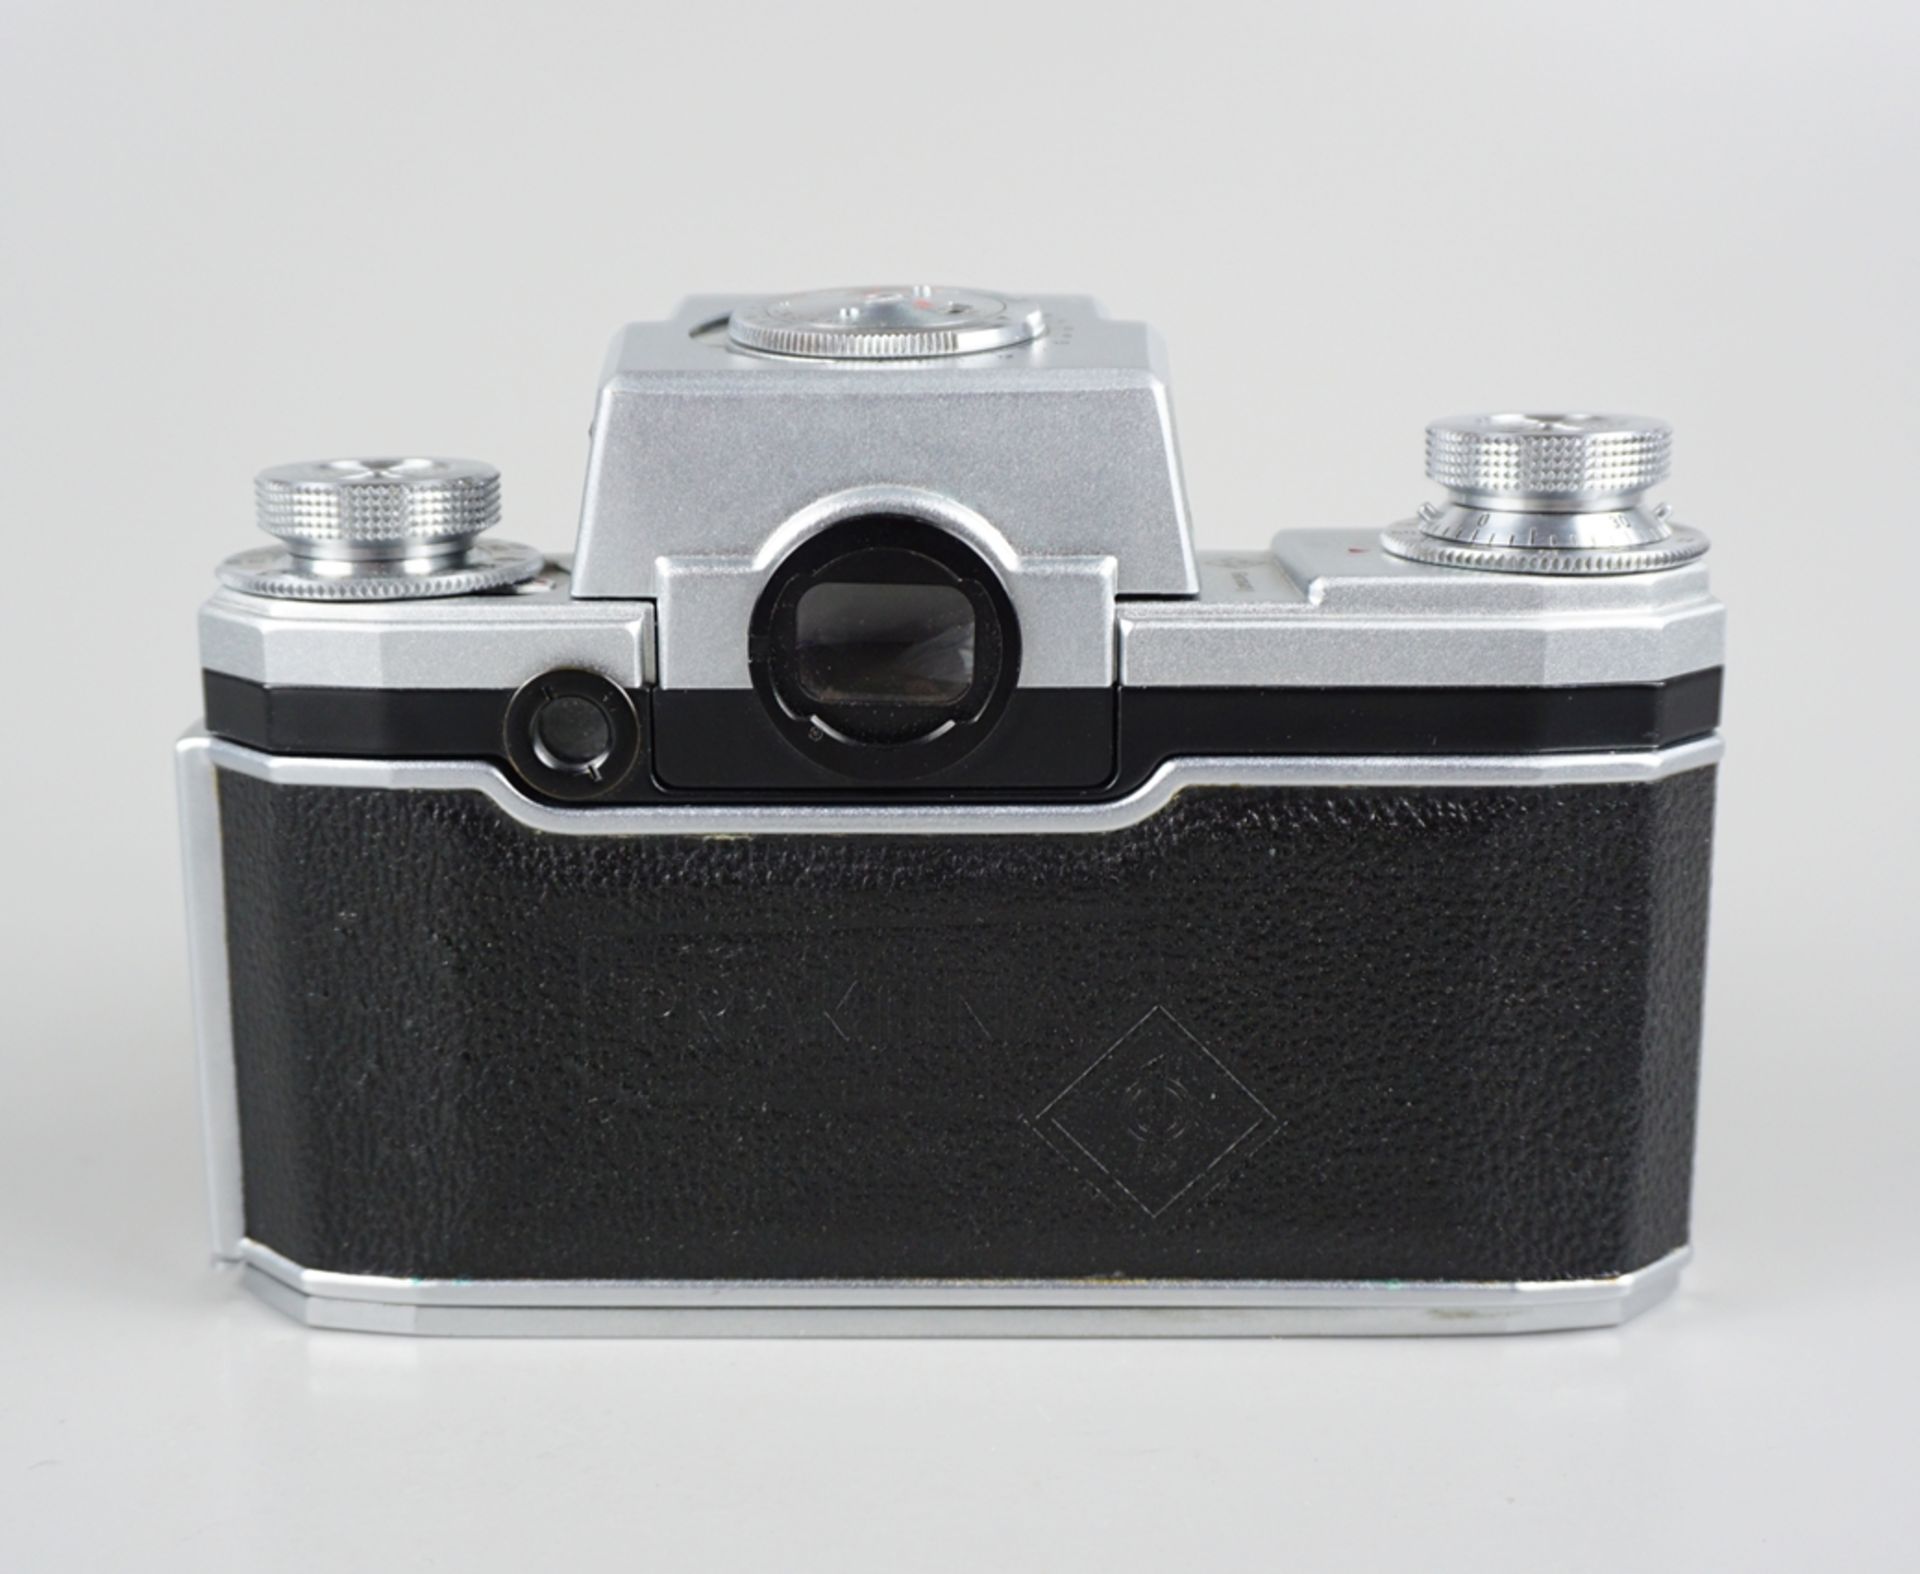 Spiegelreflexkamera Praktina II A, Kamera-Werkstätten Niedersedlitz, 1950er Jahre - Image 3 of 3